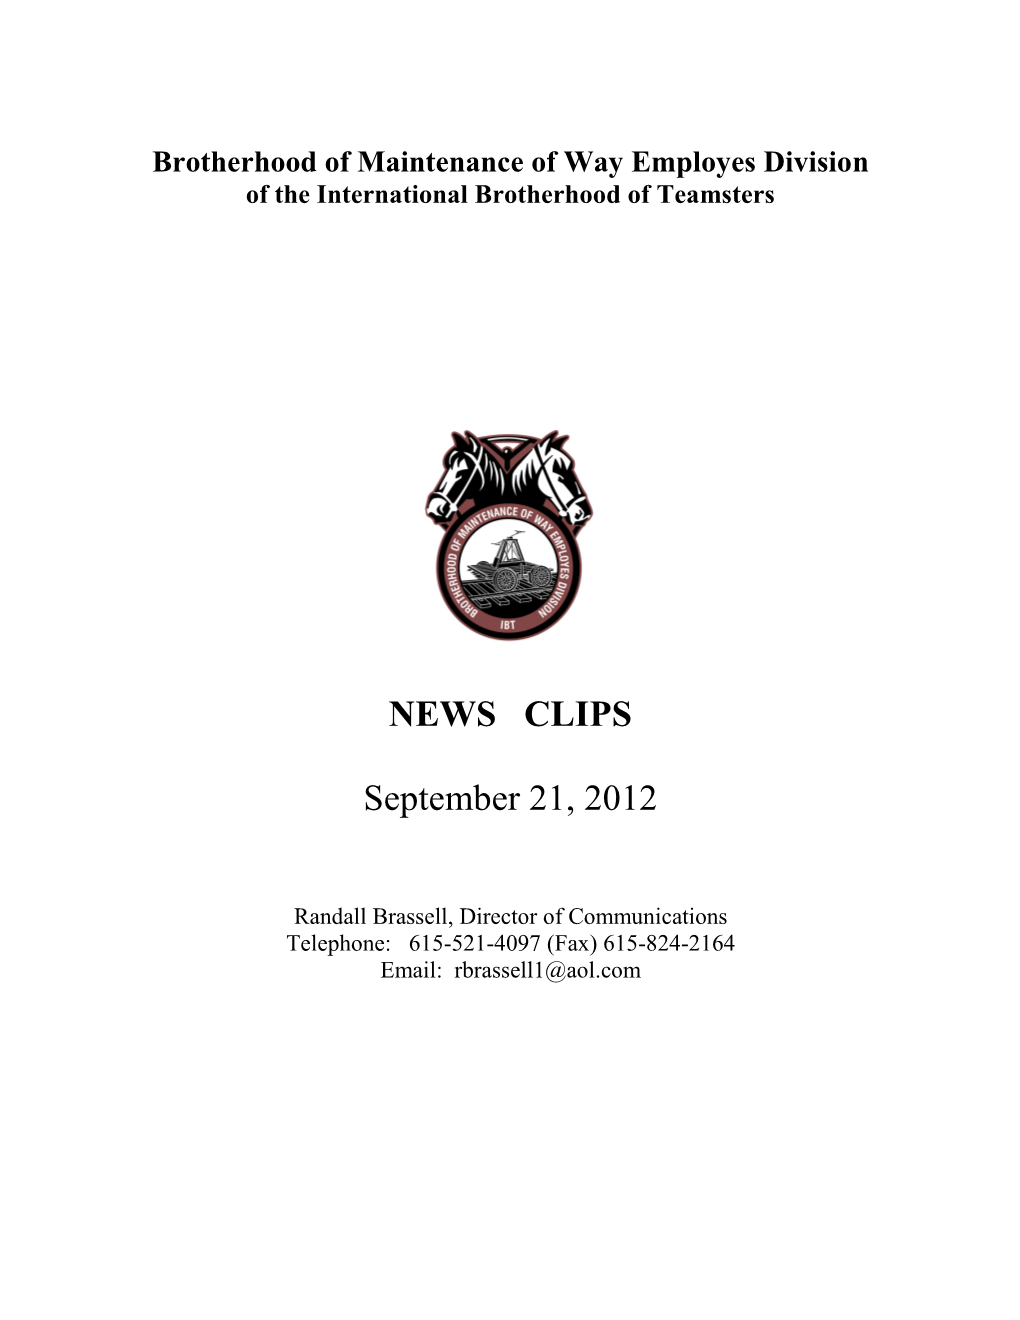 EWS CLIPS September 21, 2012